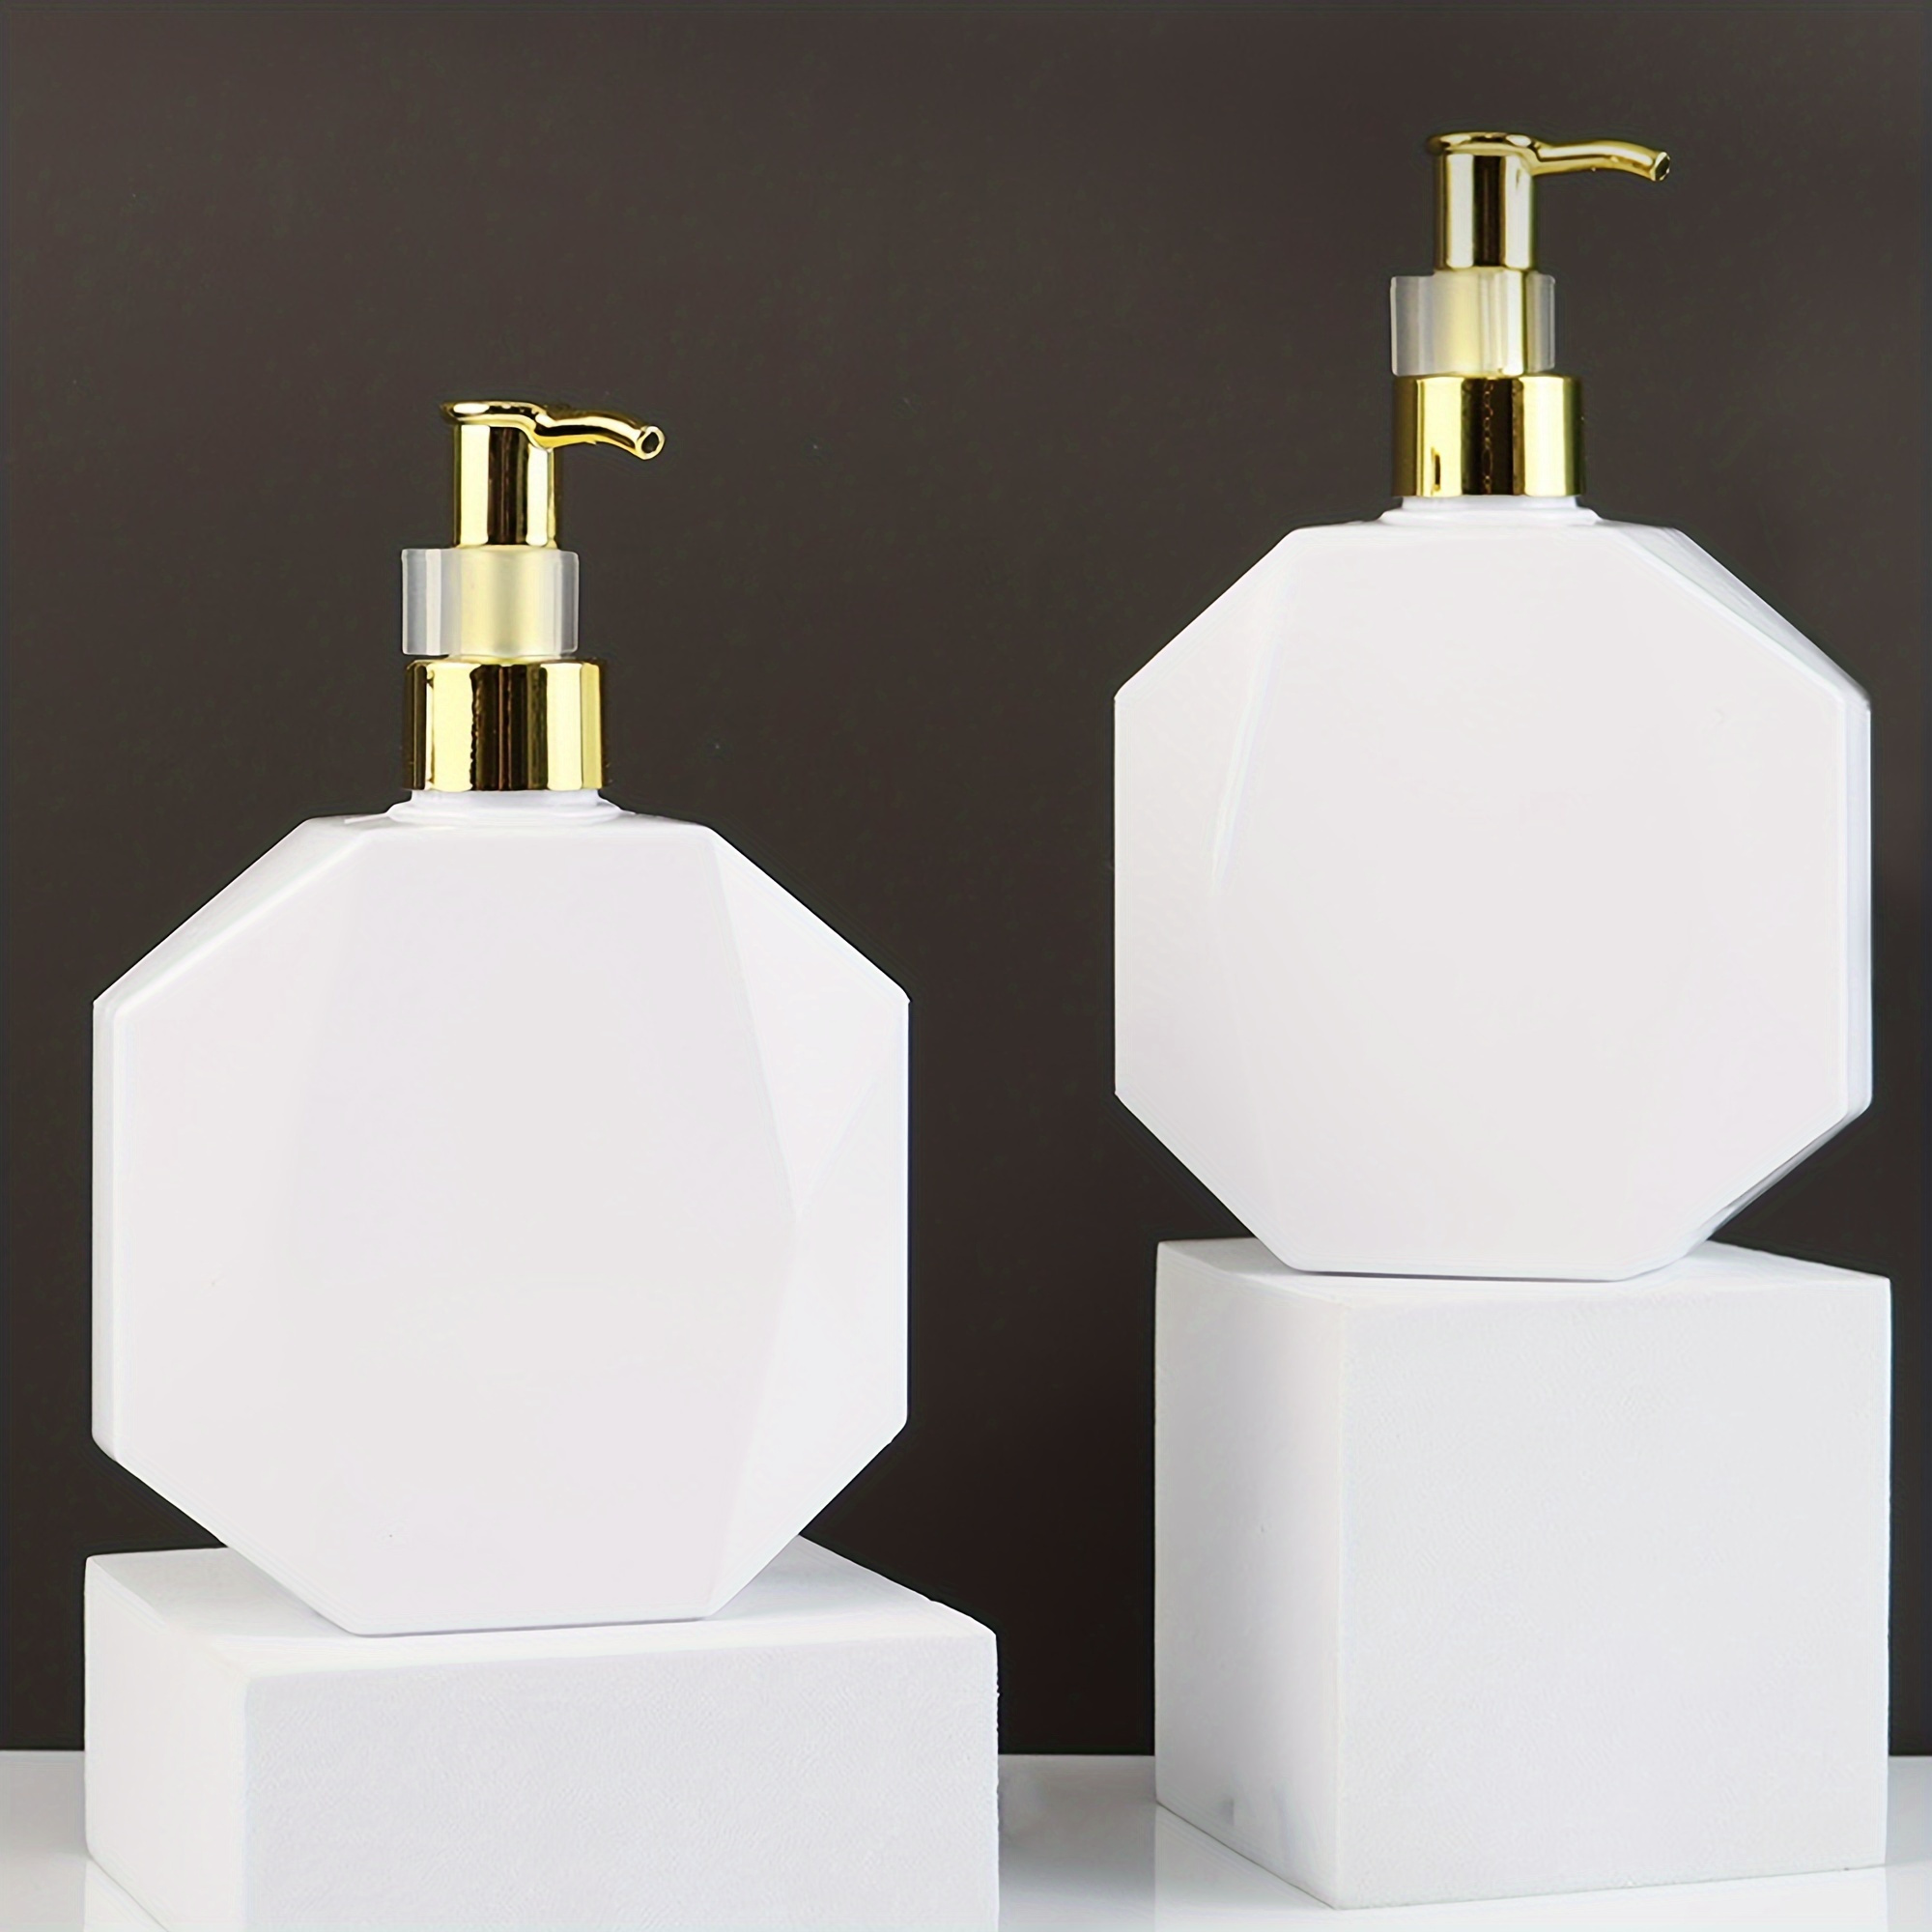 

1pc 300ml Empty Pump Bottle Dispenser Shampoo Lotion Pump Bottle Durable Refillable Containers For Massage Oil & Liquid Soap